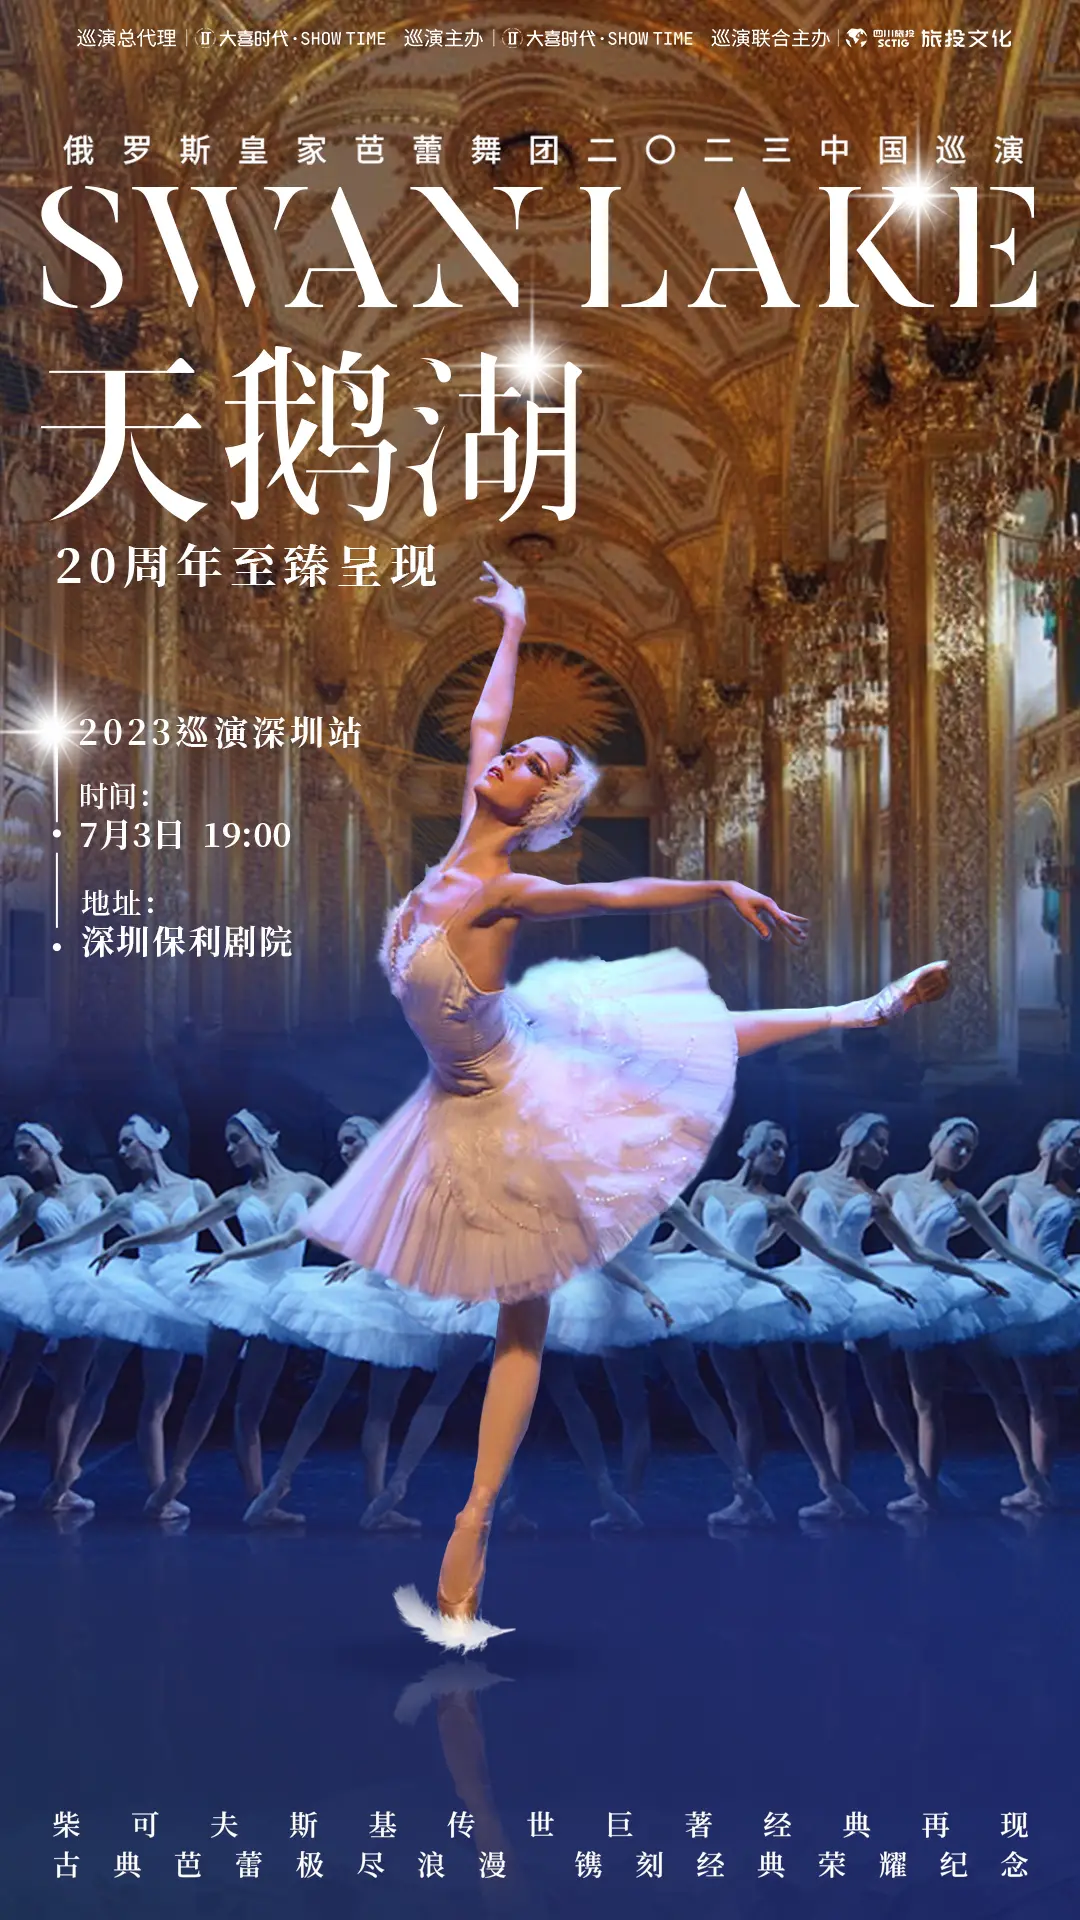 俄罗斯皇家芭蕾舞团《天鹅湖》深圳站